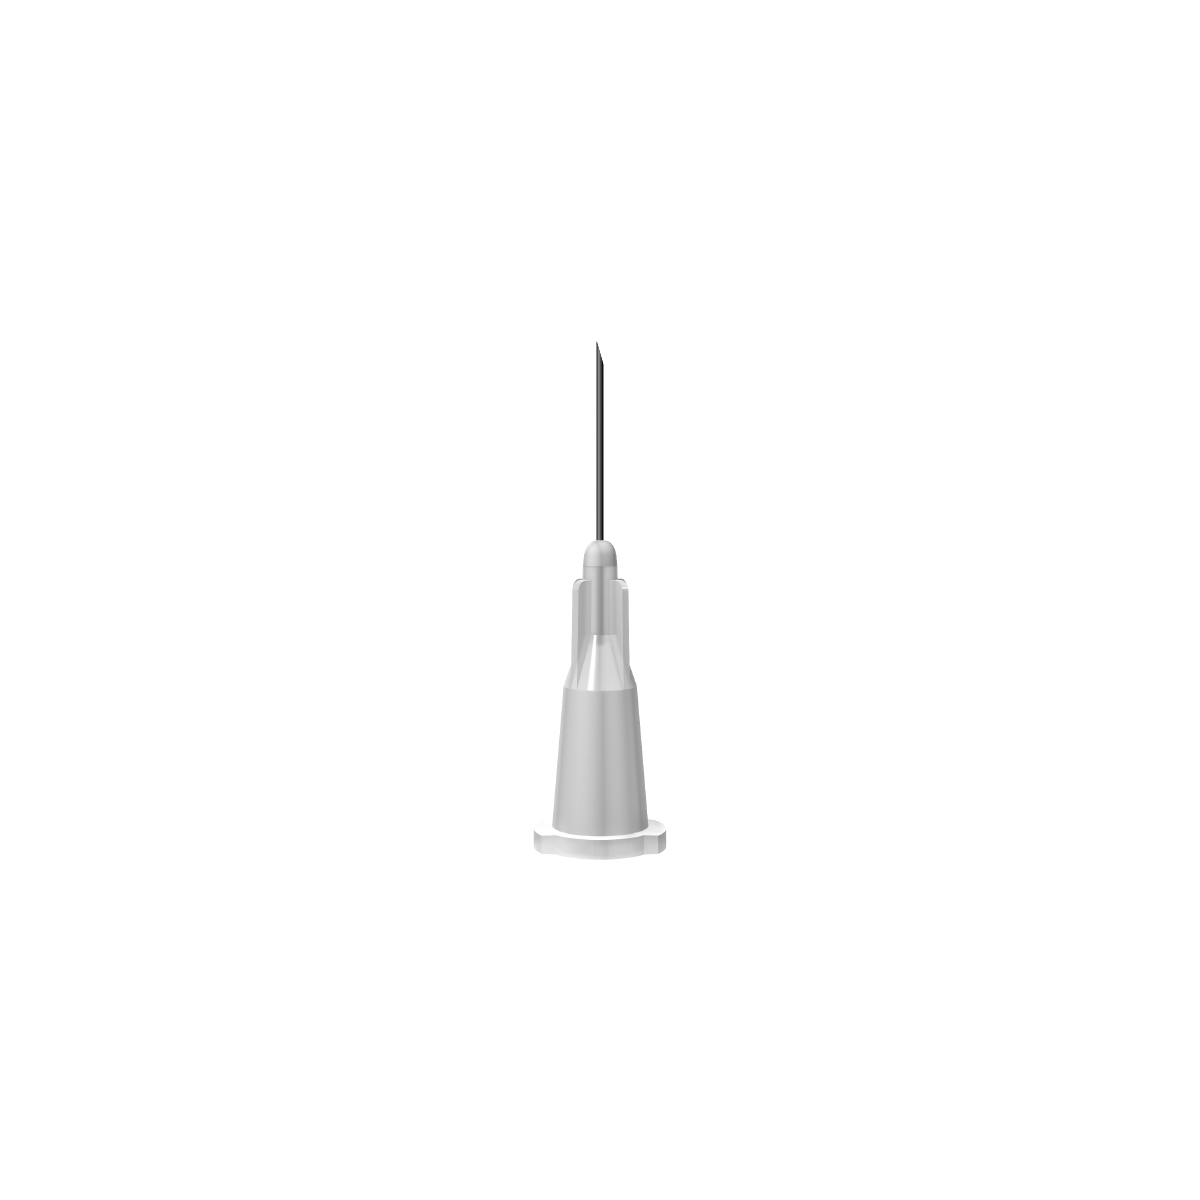 BD: Grey 27G 12mm (½ inch) needle 